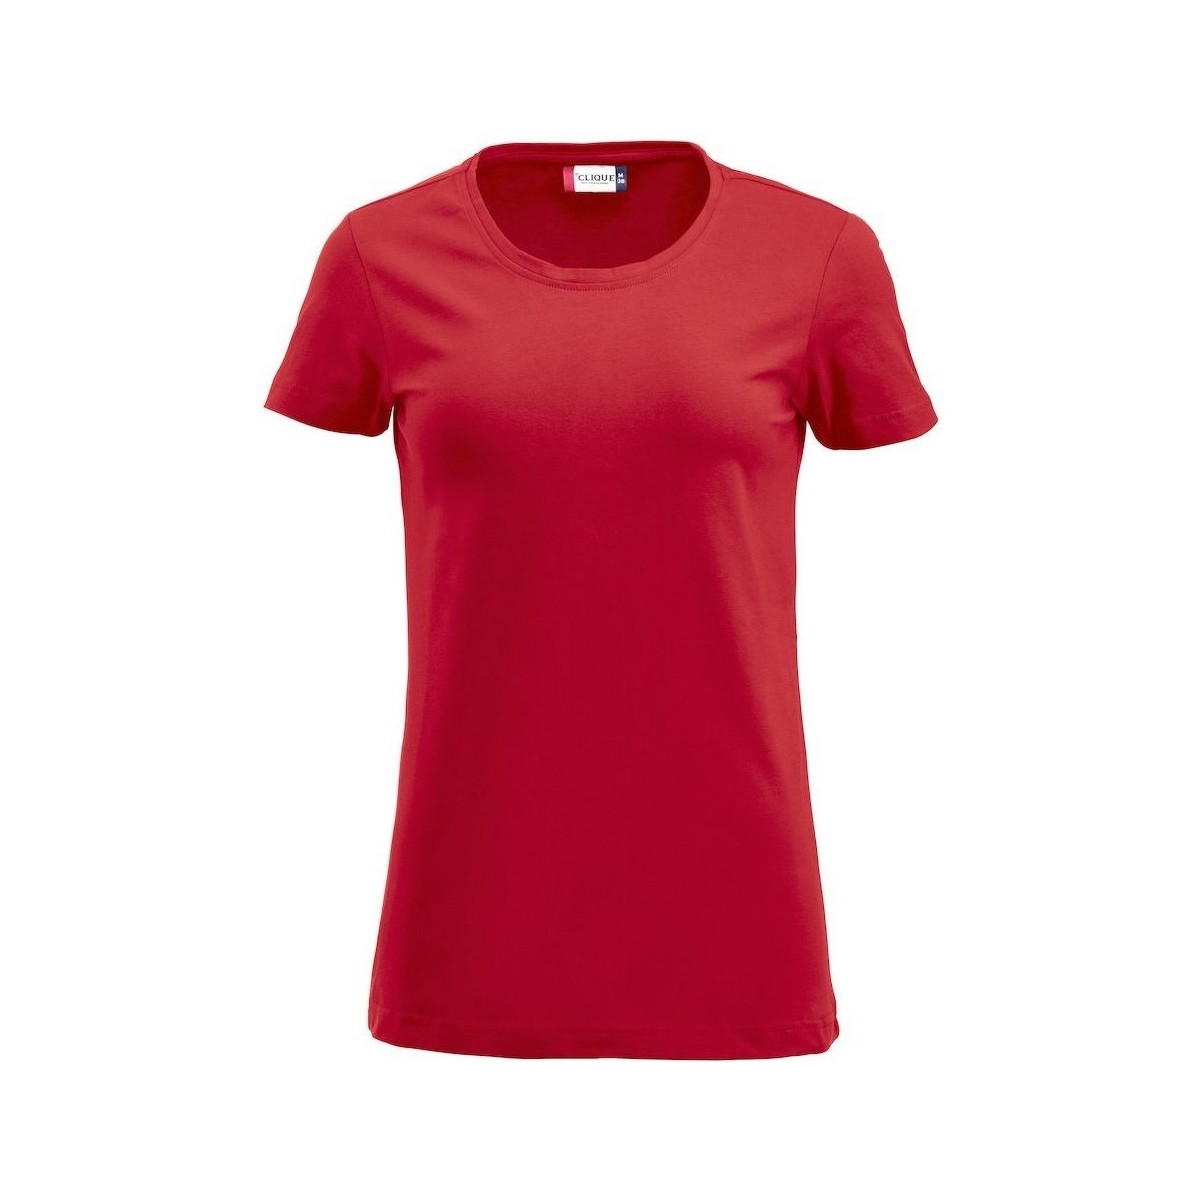 Vêtements Femme T-shirts manches longues C-Clique Carolina Rouge